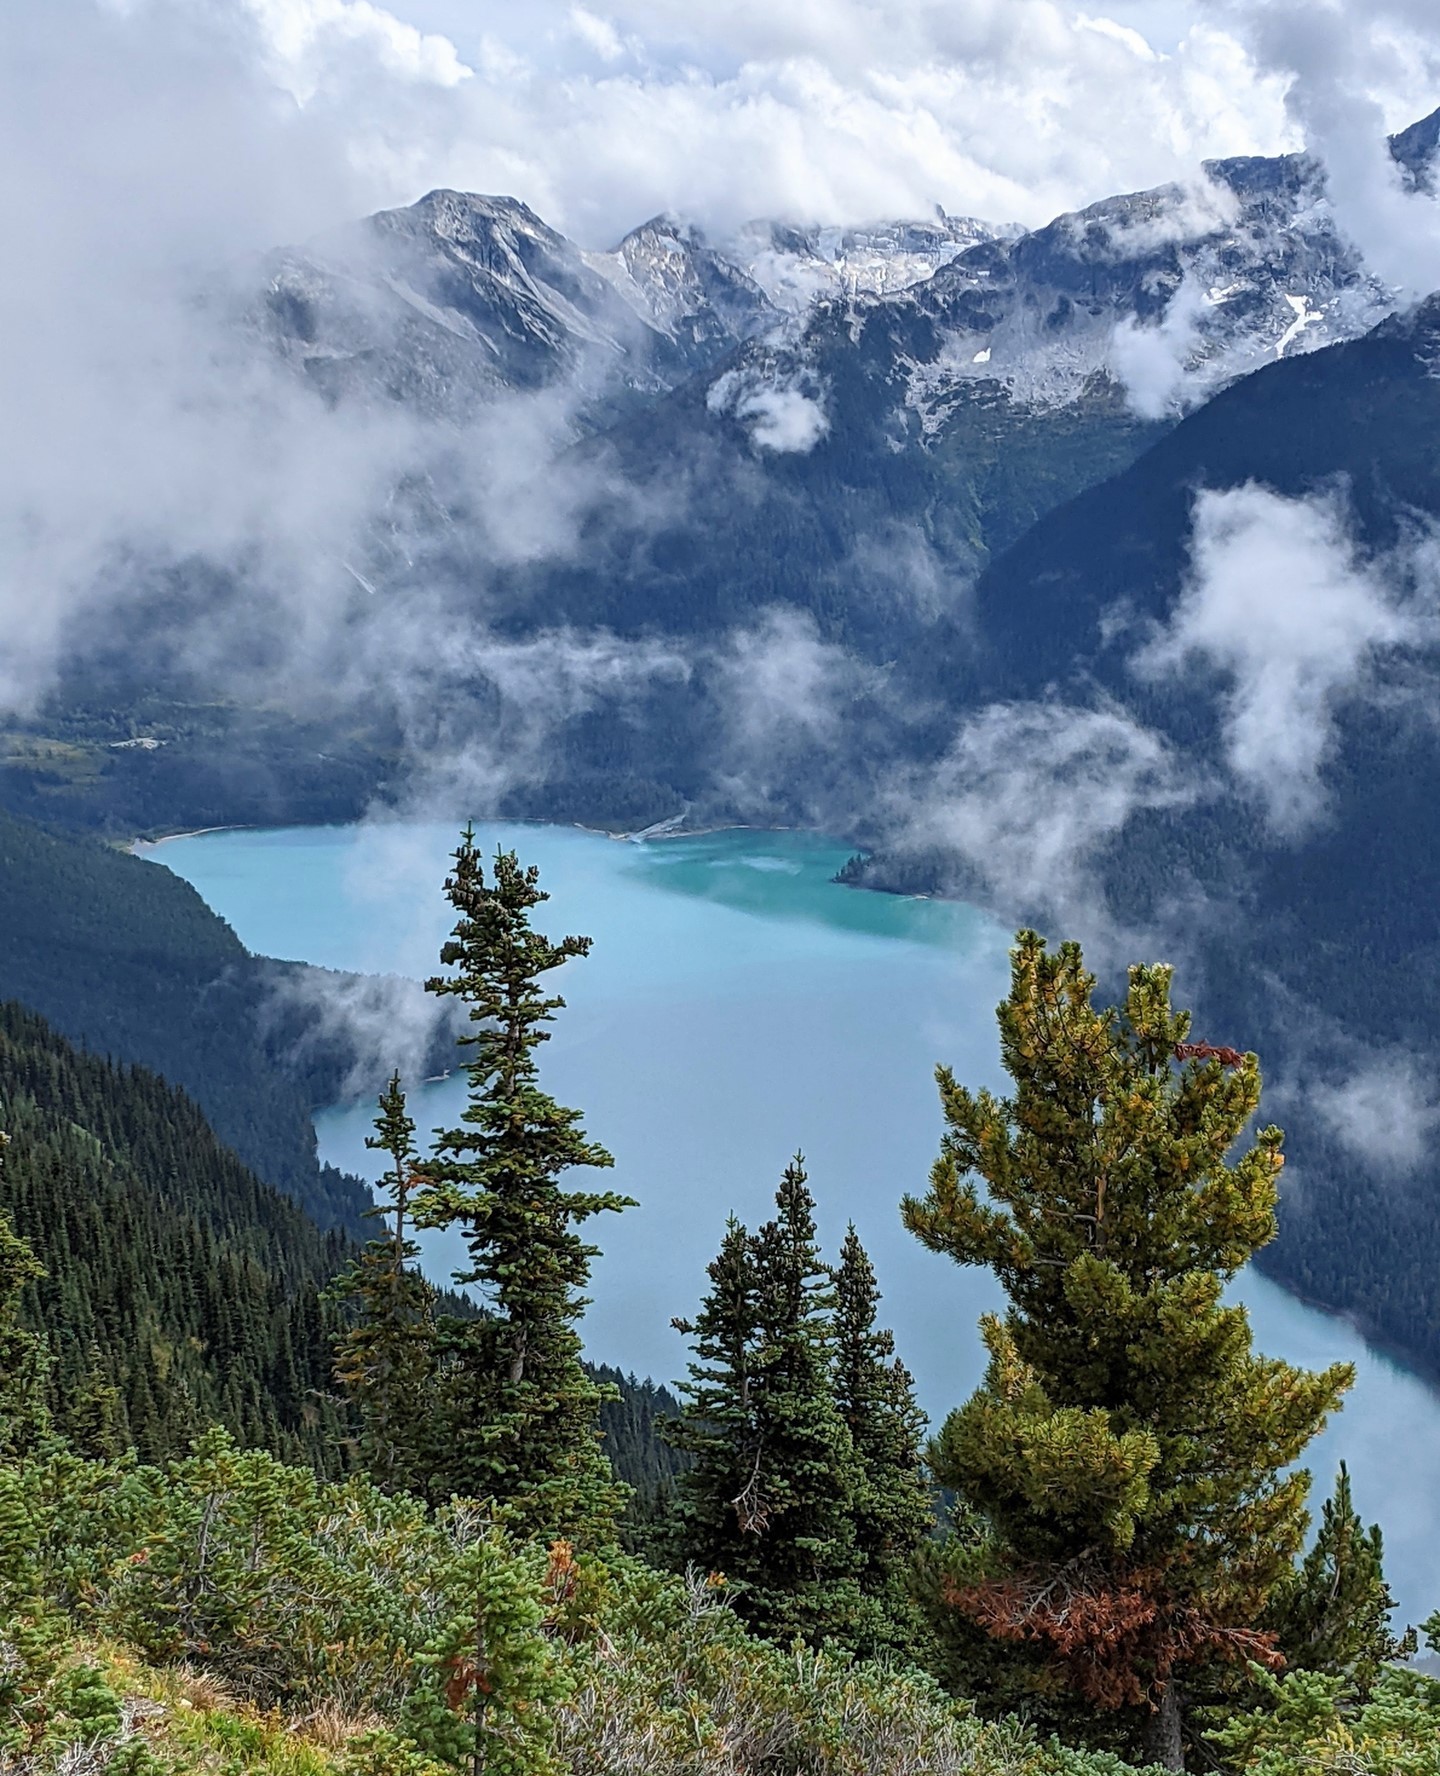 Cheakamus Lake, British Columbia